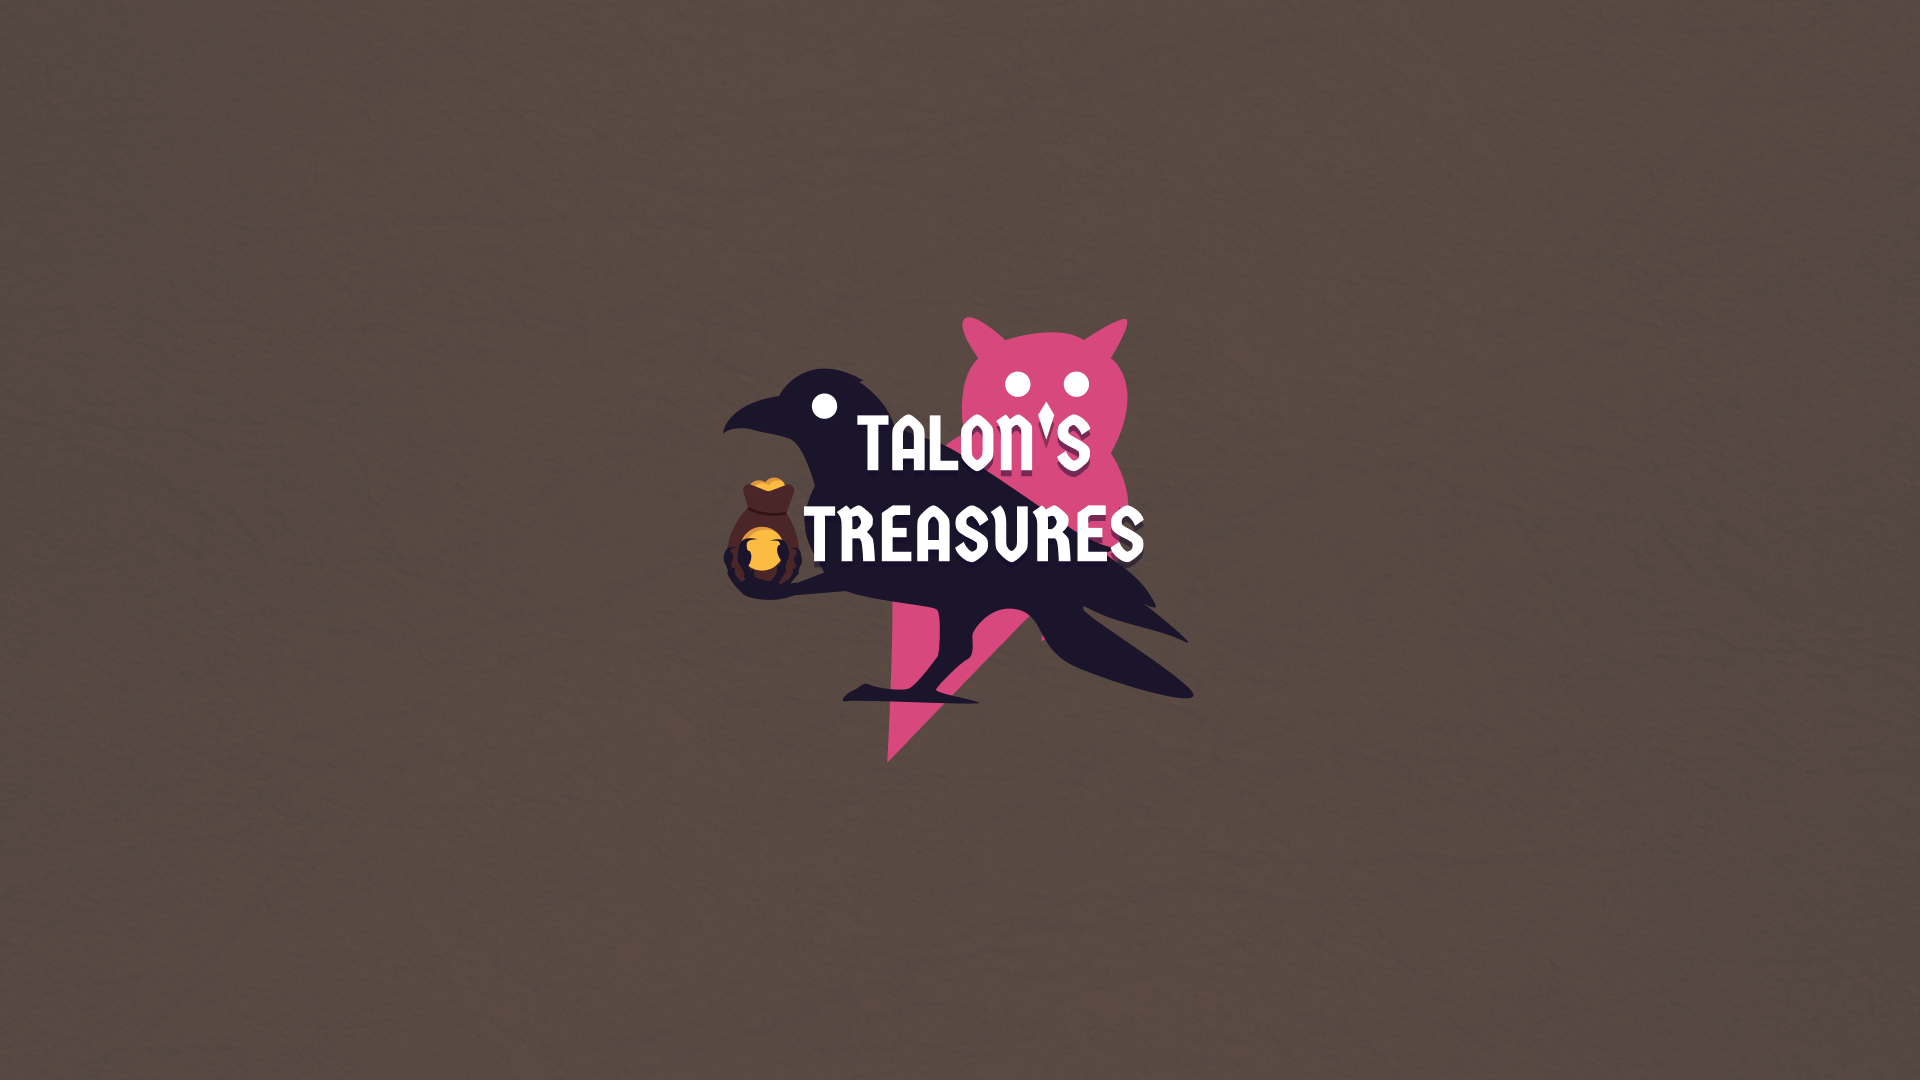 Talon's Treasures